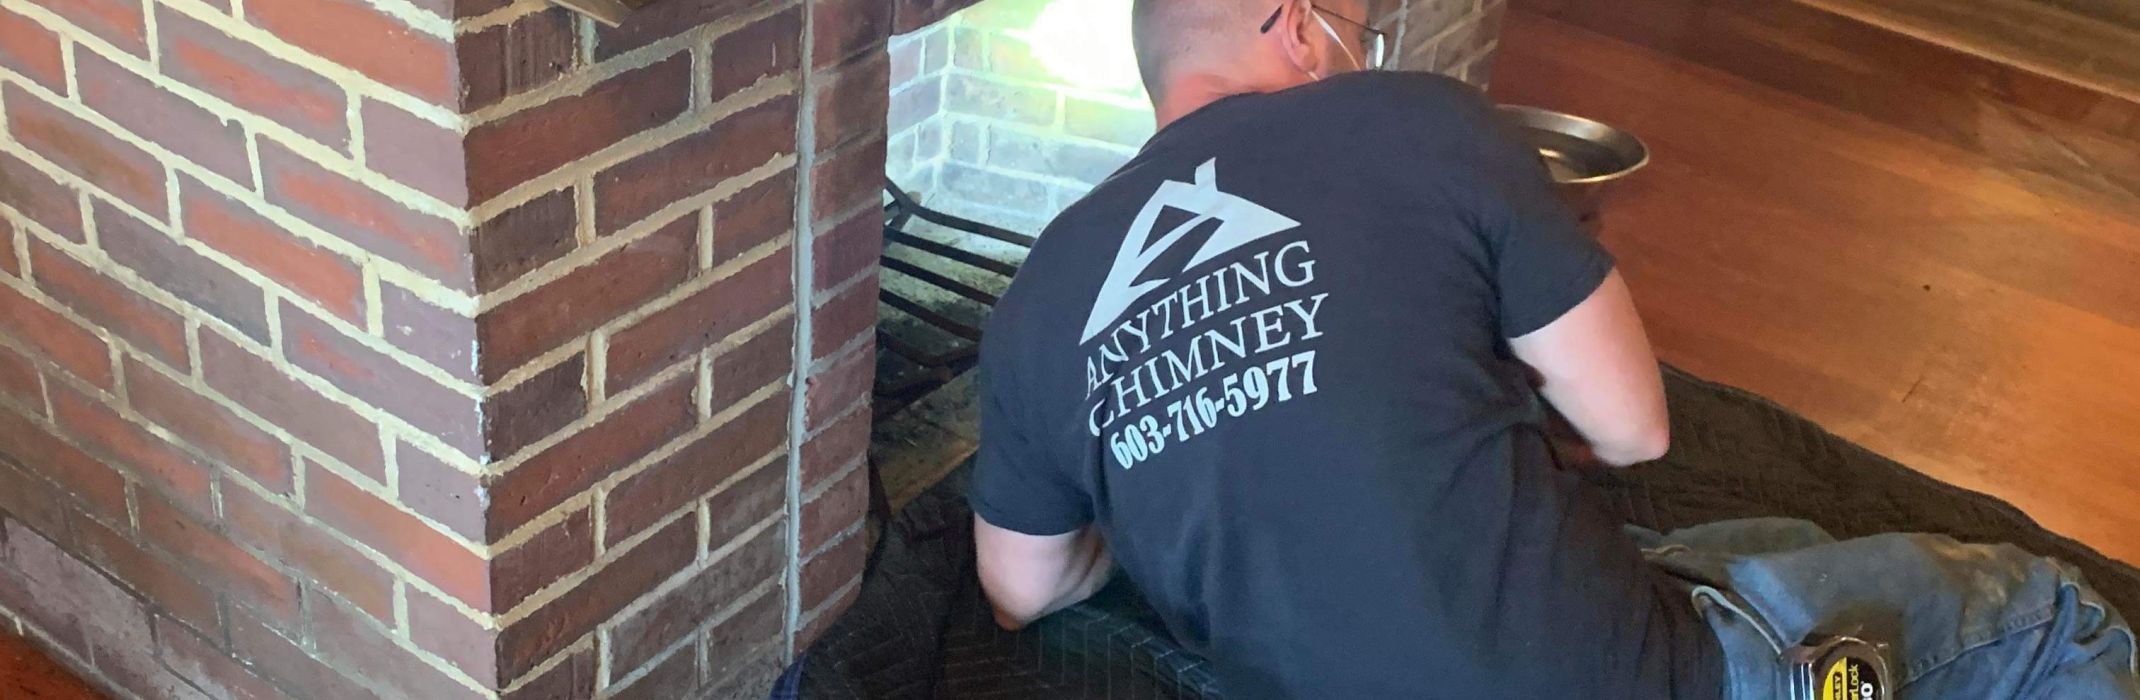 chimney repair quote